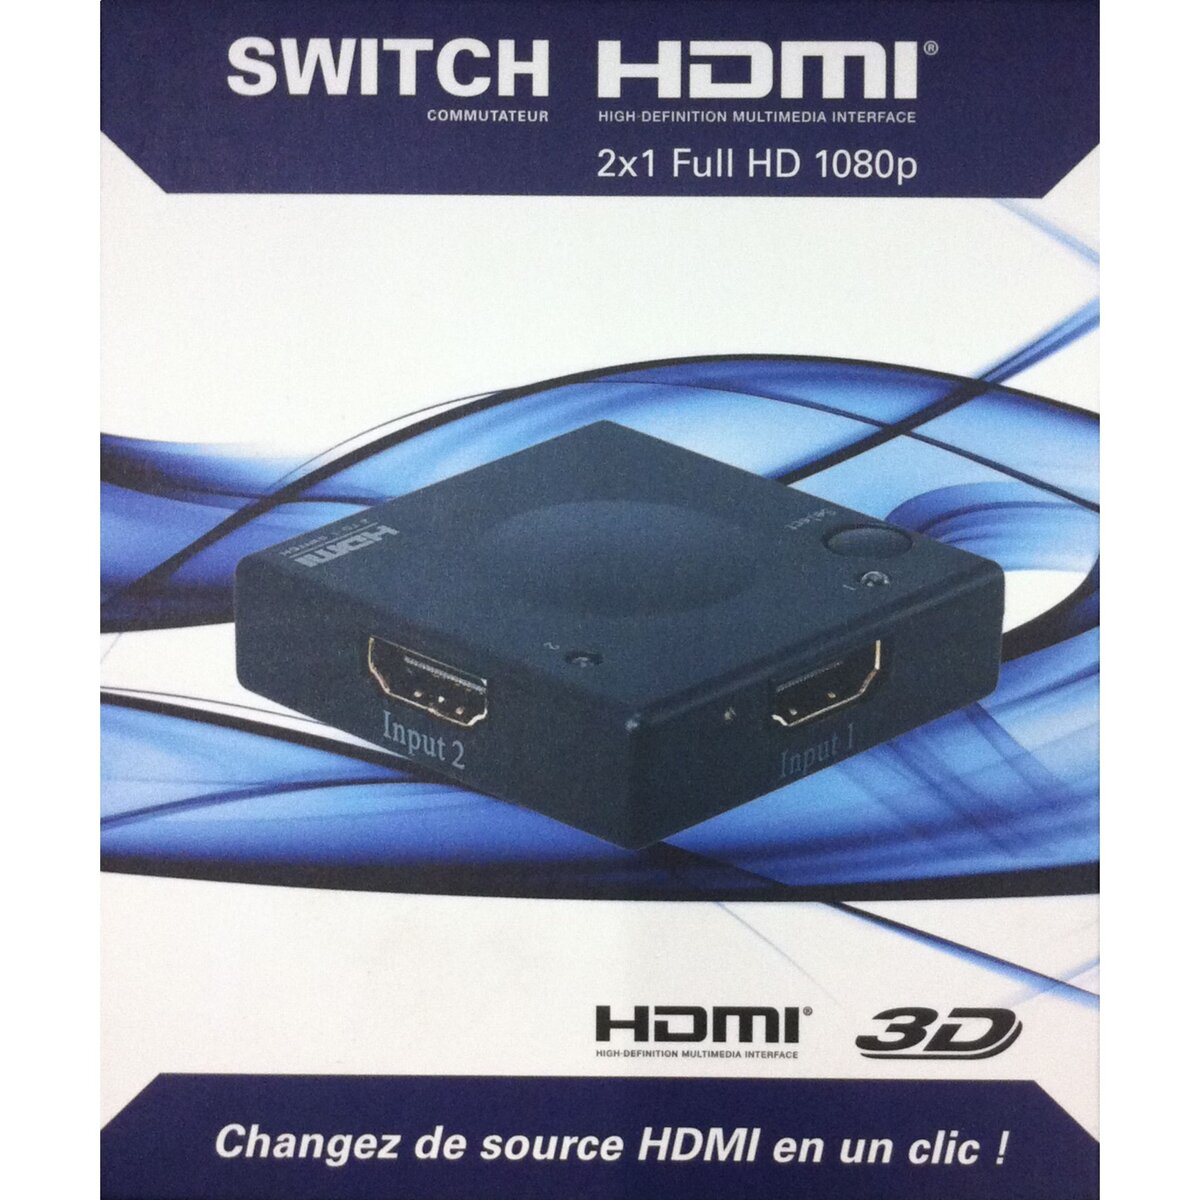 Switch HDMI 2X1 Full HD 1080p